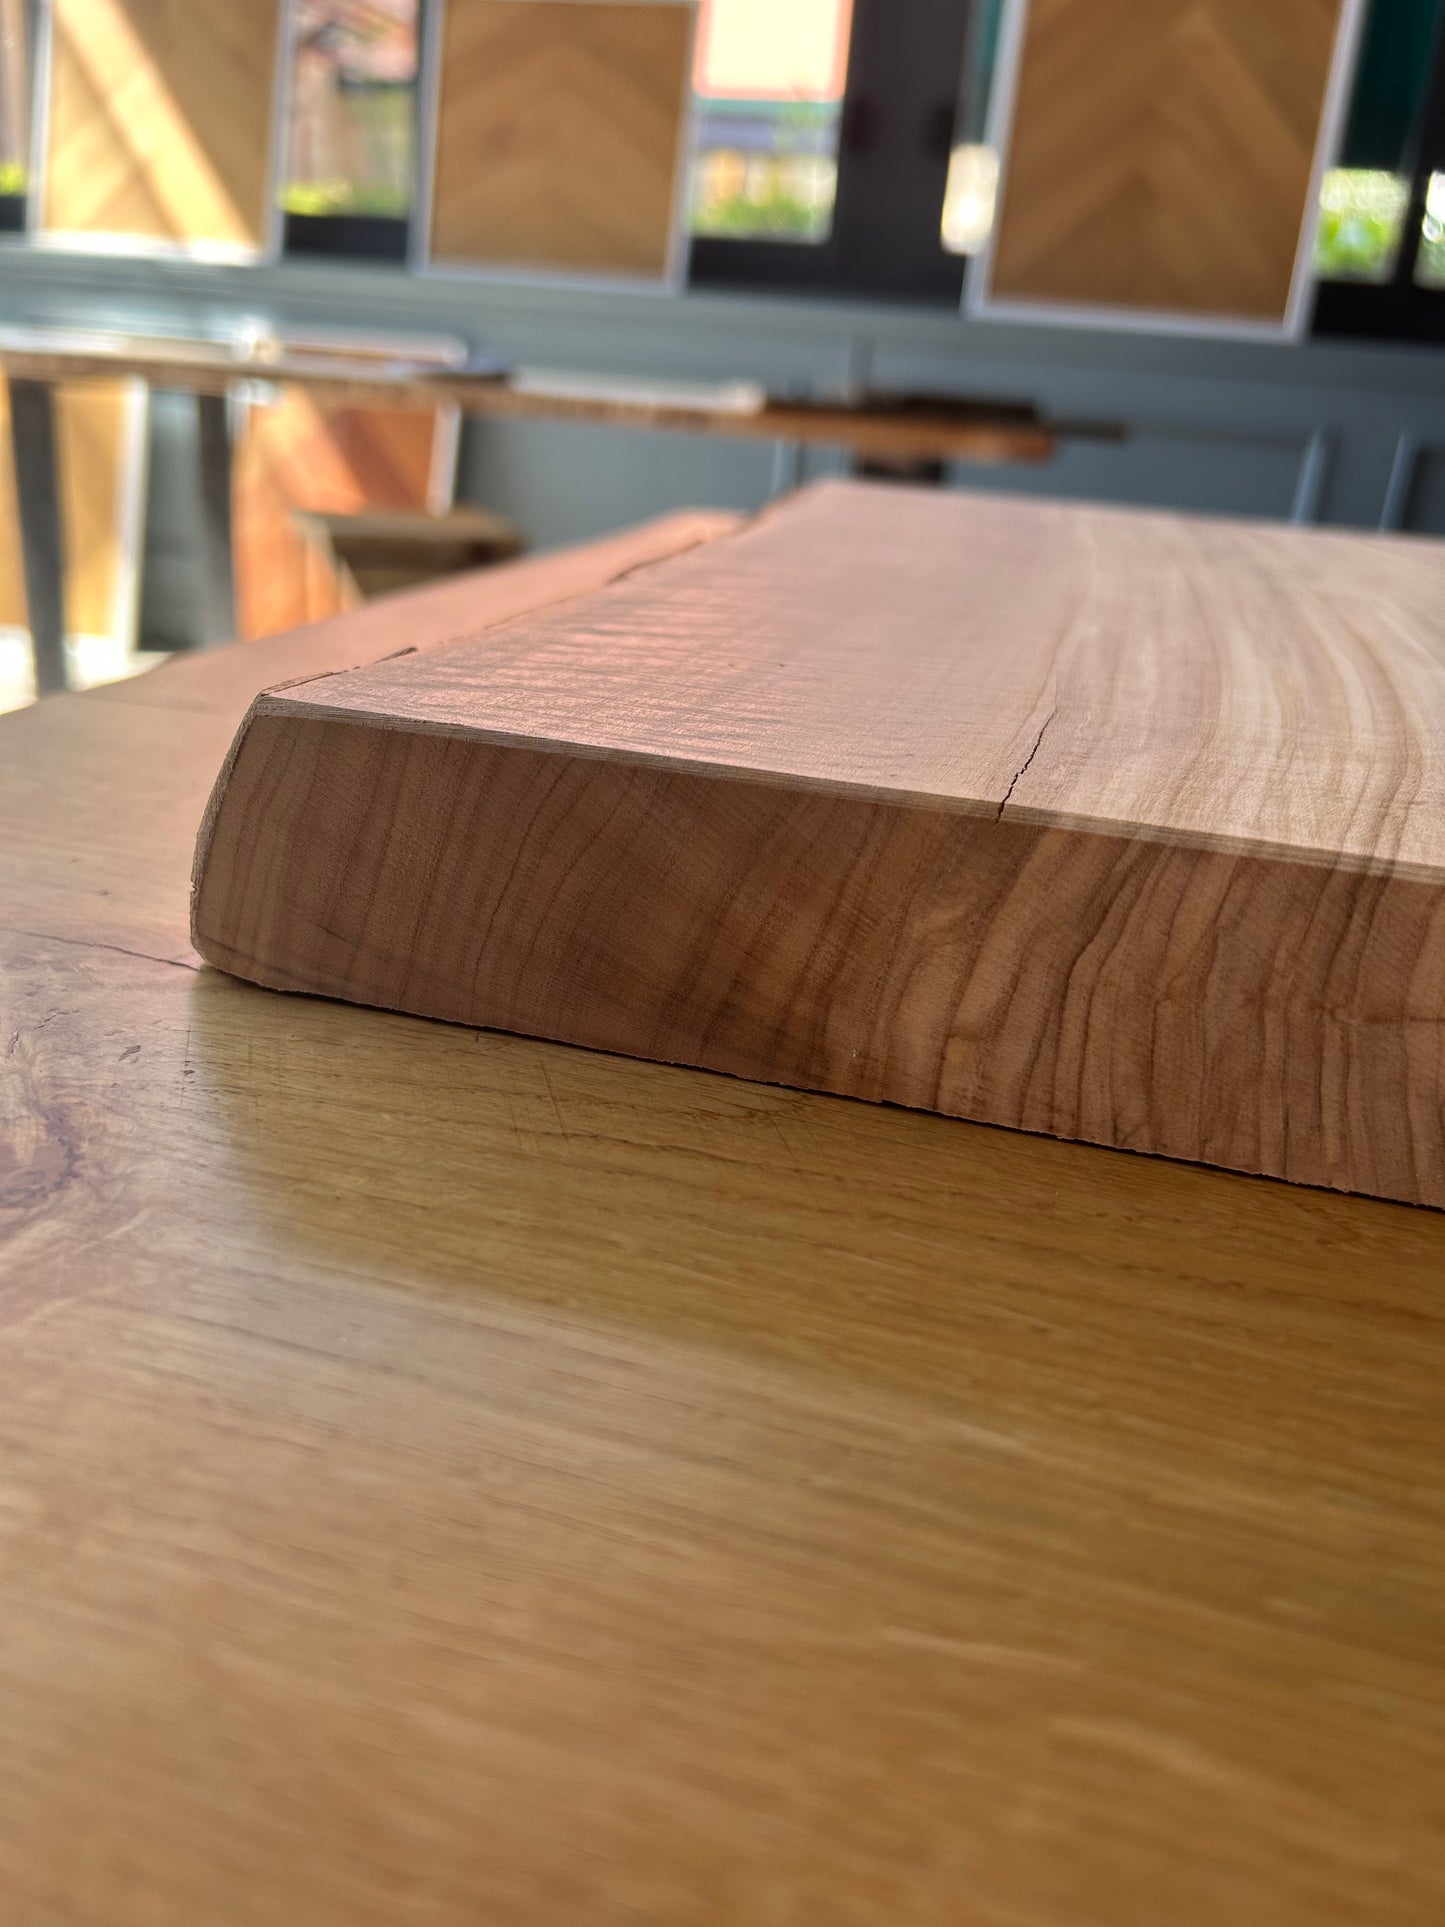 Tagliere Medium in legno di ulivo con corteccia Made in Blasi - Spessore 4,5/5,0 mm